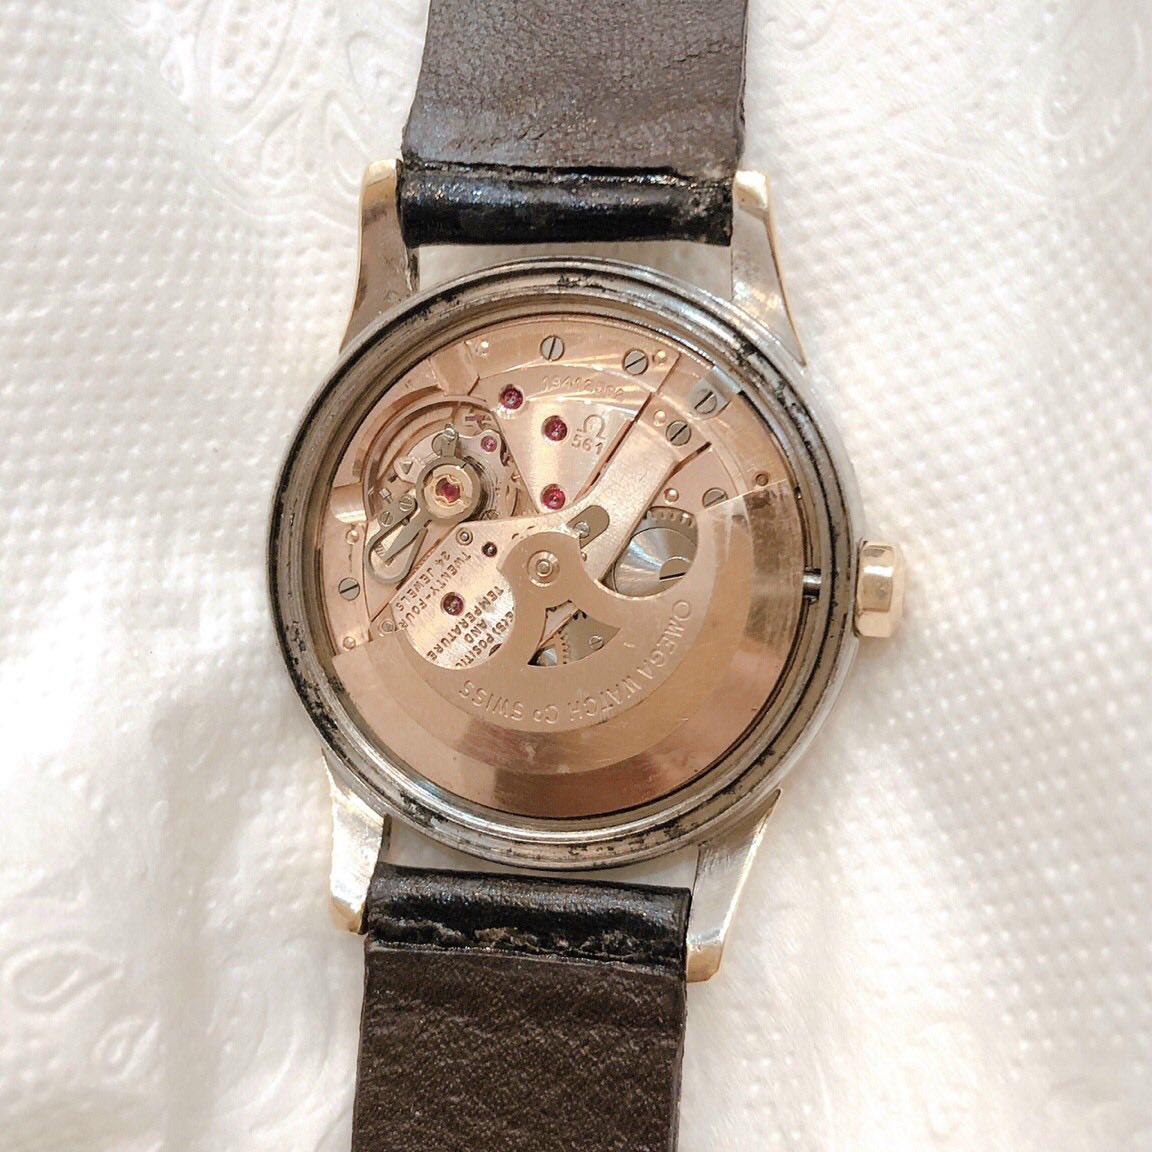 Đồng hồ cổ Omega Constellation automatic DMi chính hãng Thụy Sĩ